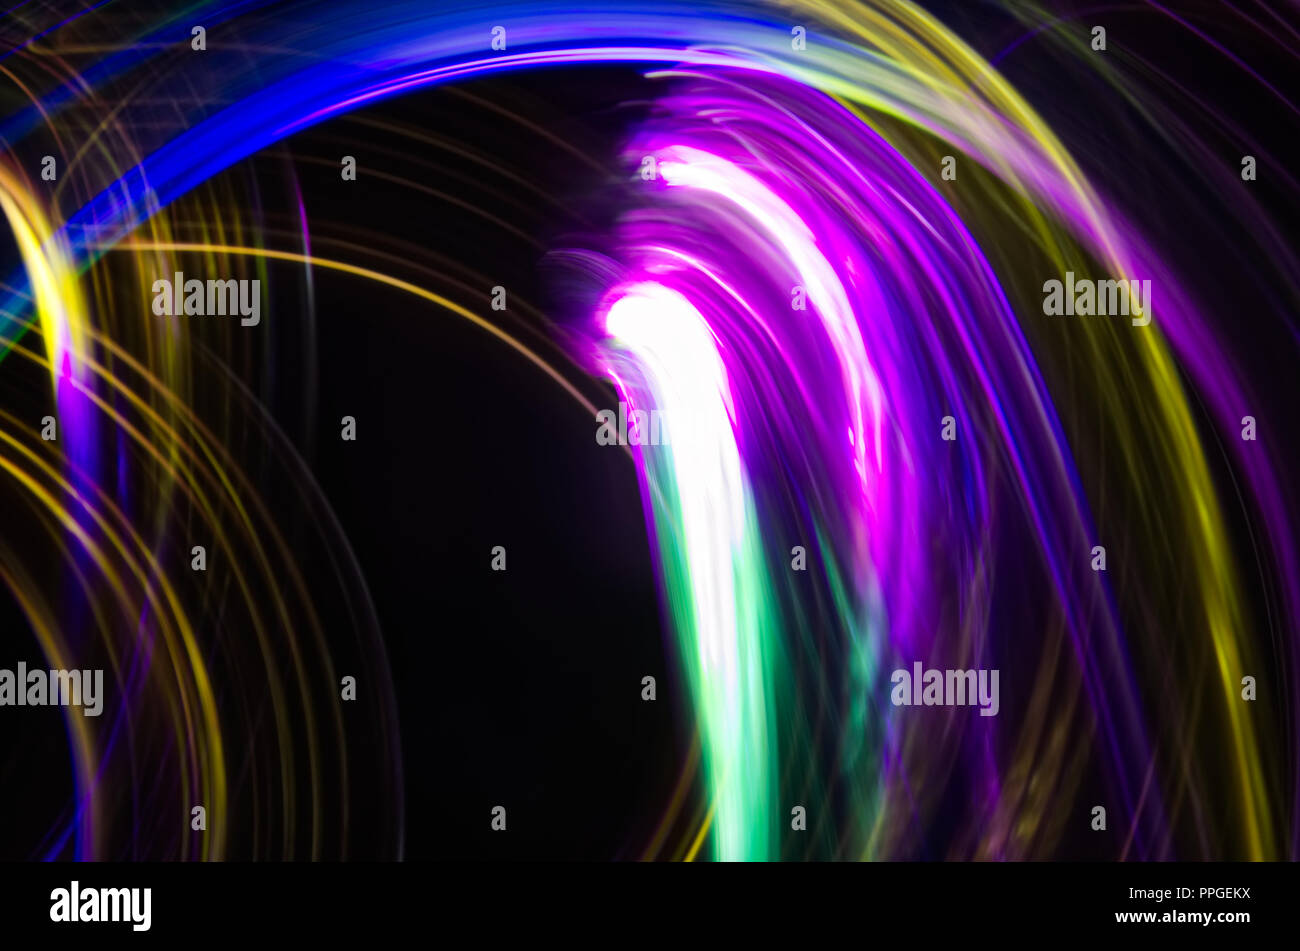 Zusammenfassung Hintergrund gut für eine Anzeige, hübsche wirbelt der Licht, in hellen Farben. Neon-effekt. Stockfoto